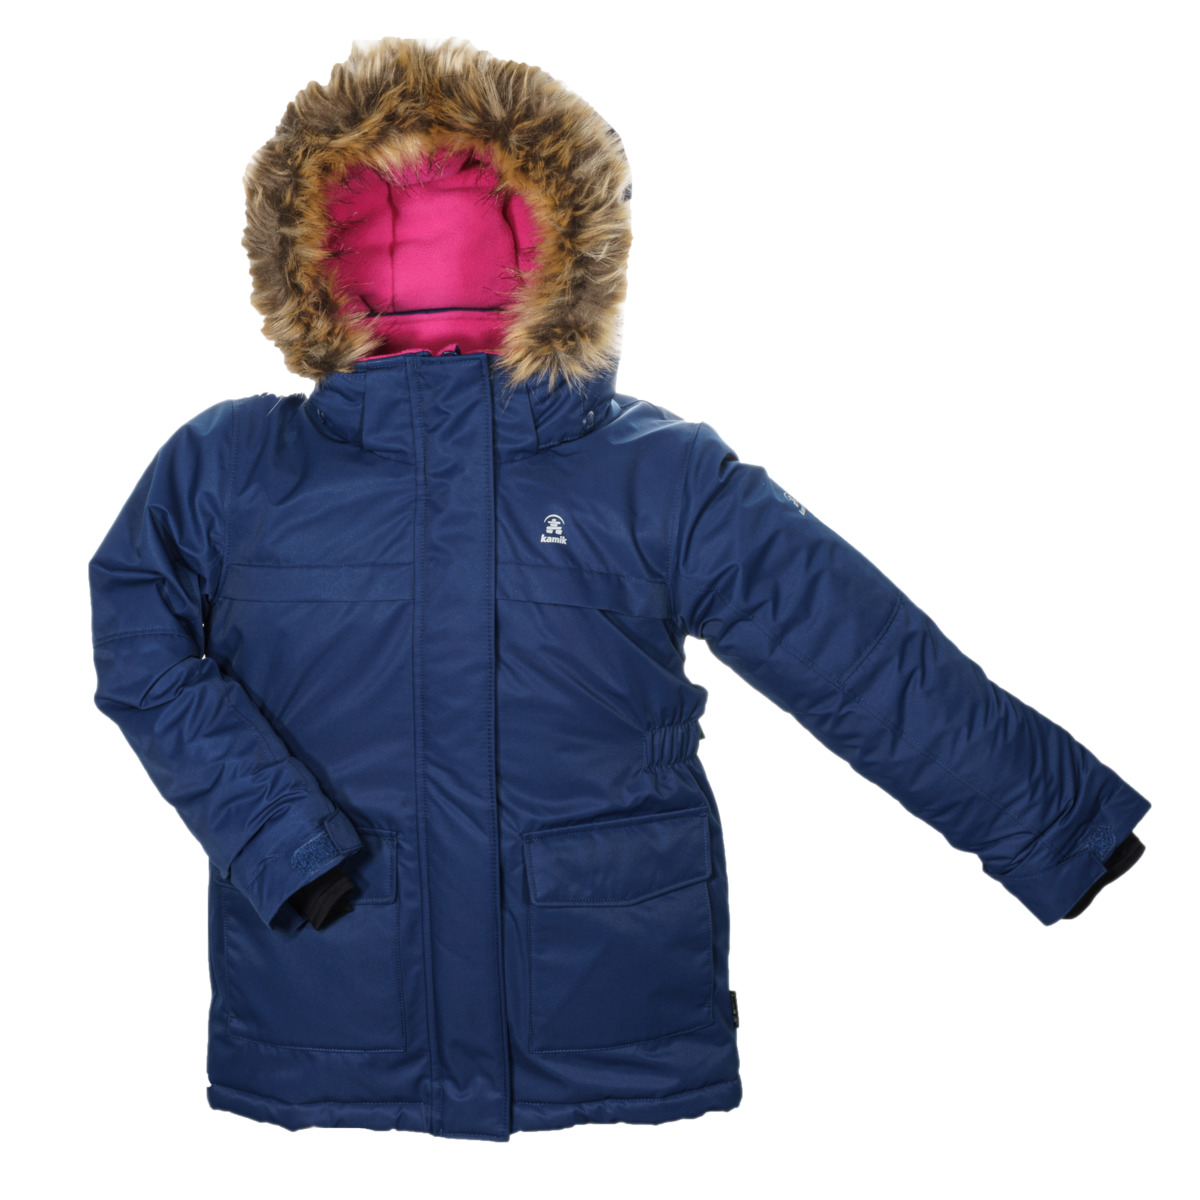 Jacken für Kinder günstig online kaufen bei - TAURO